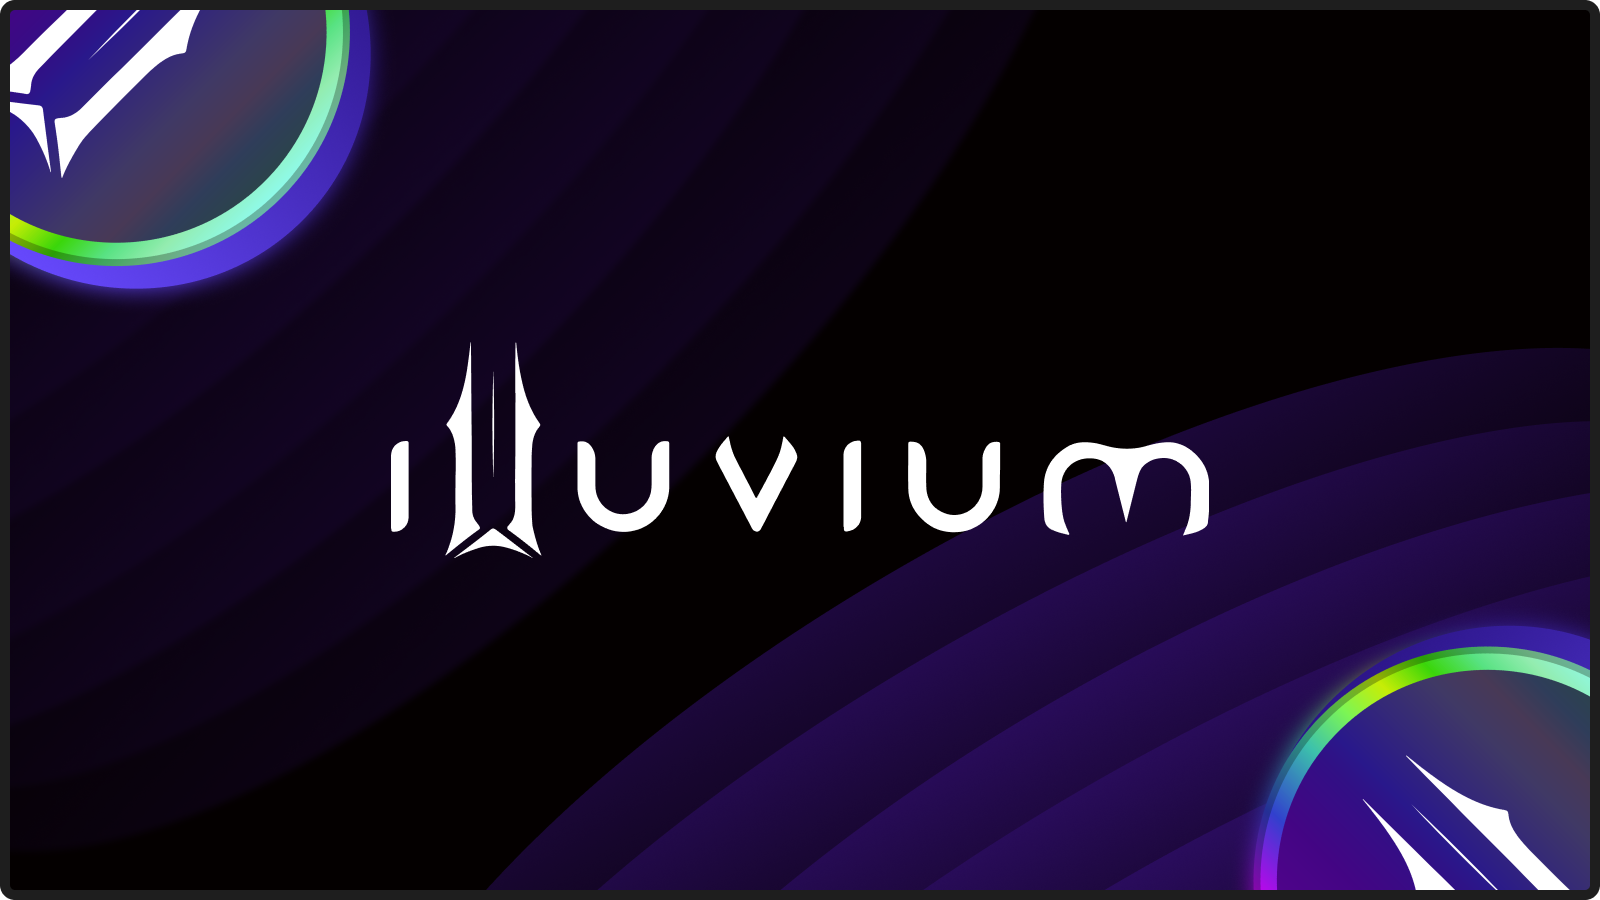 Illuvium (ILV): A Beginner’s Guide